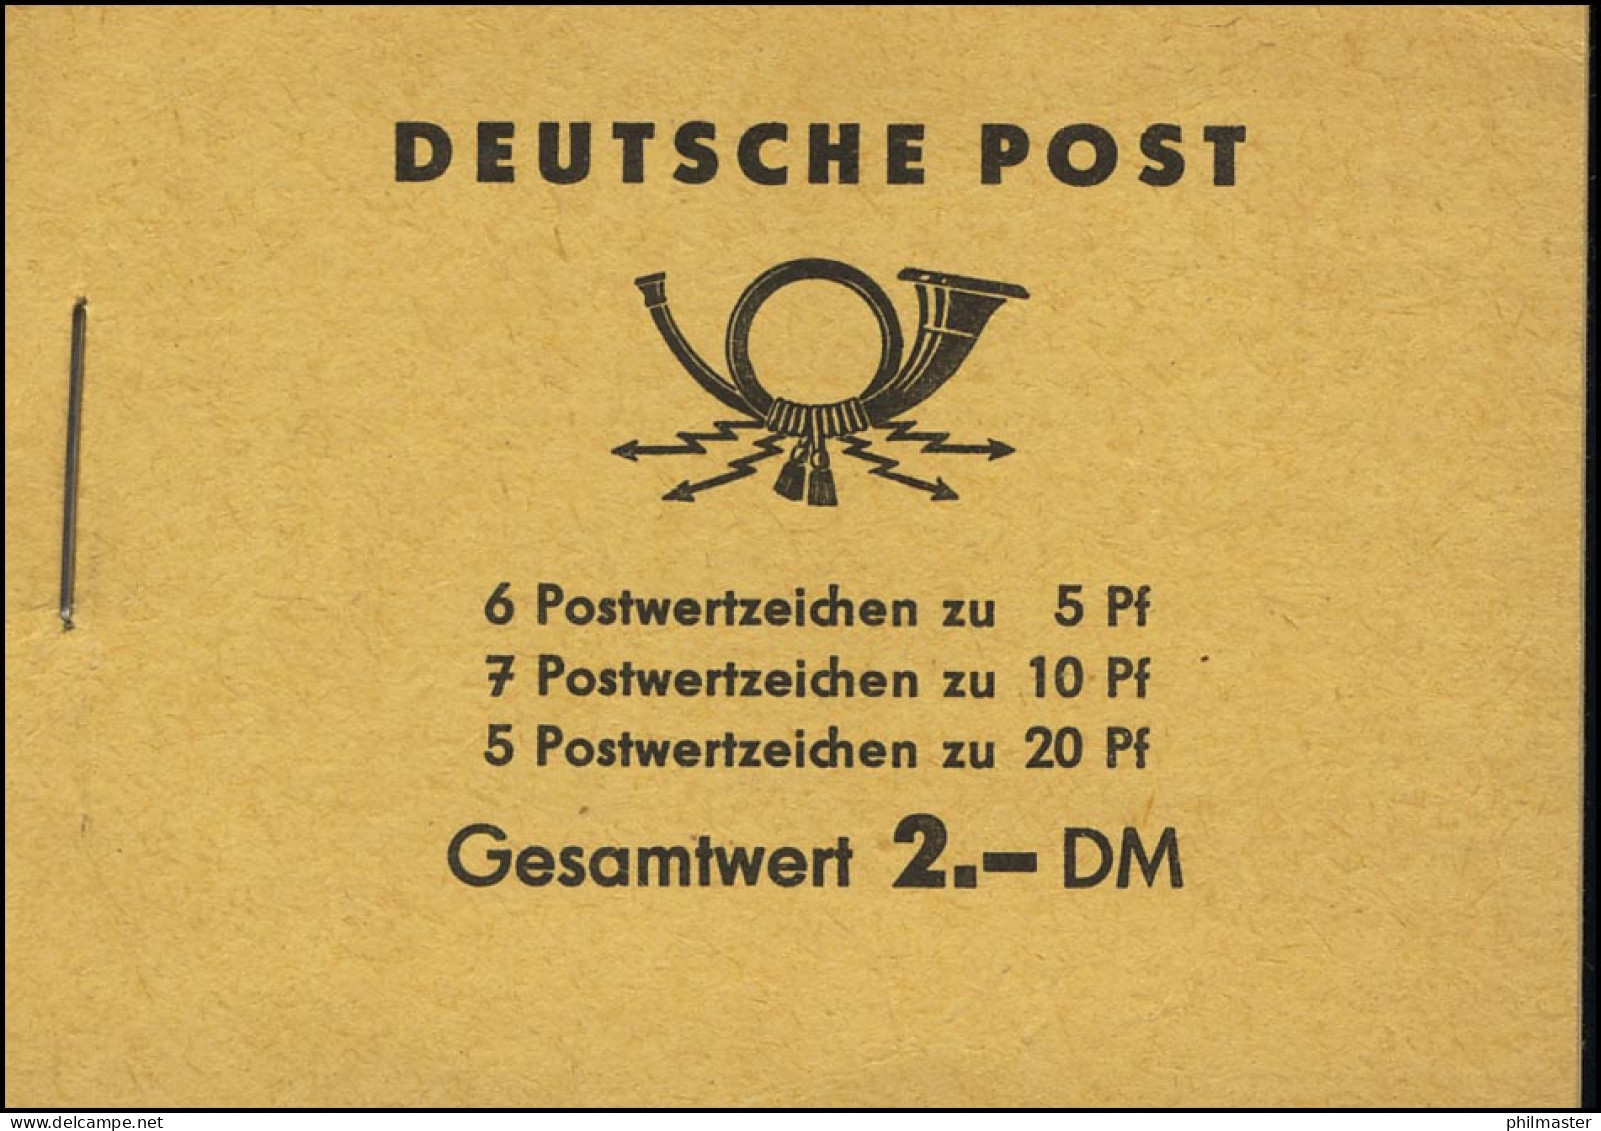 MH 3b2 Fünfjahrplan 1961 Klammer 17 Mm - Postfrisch - Booklets